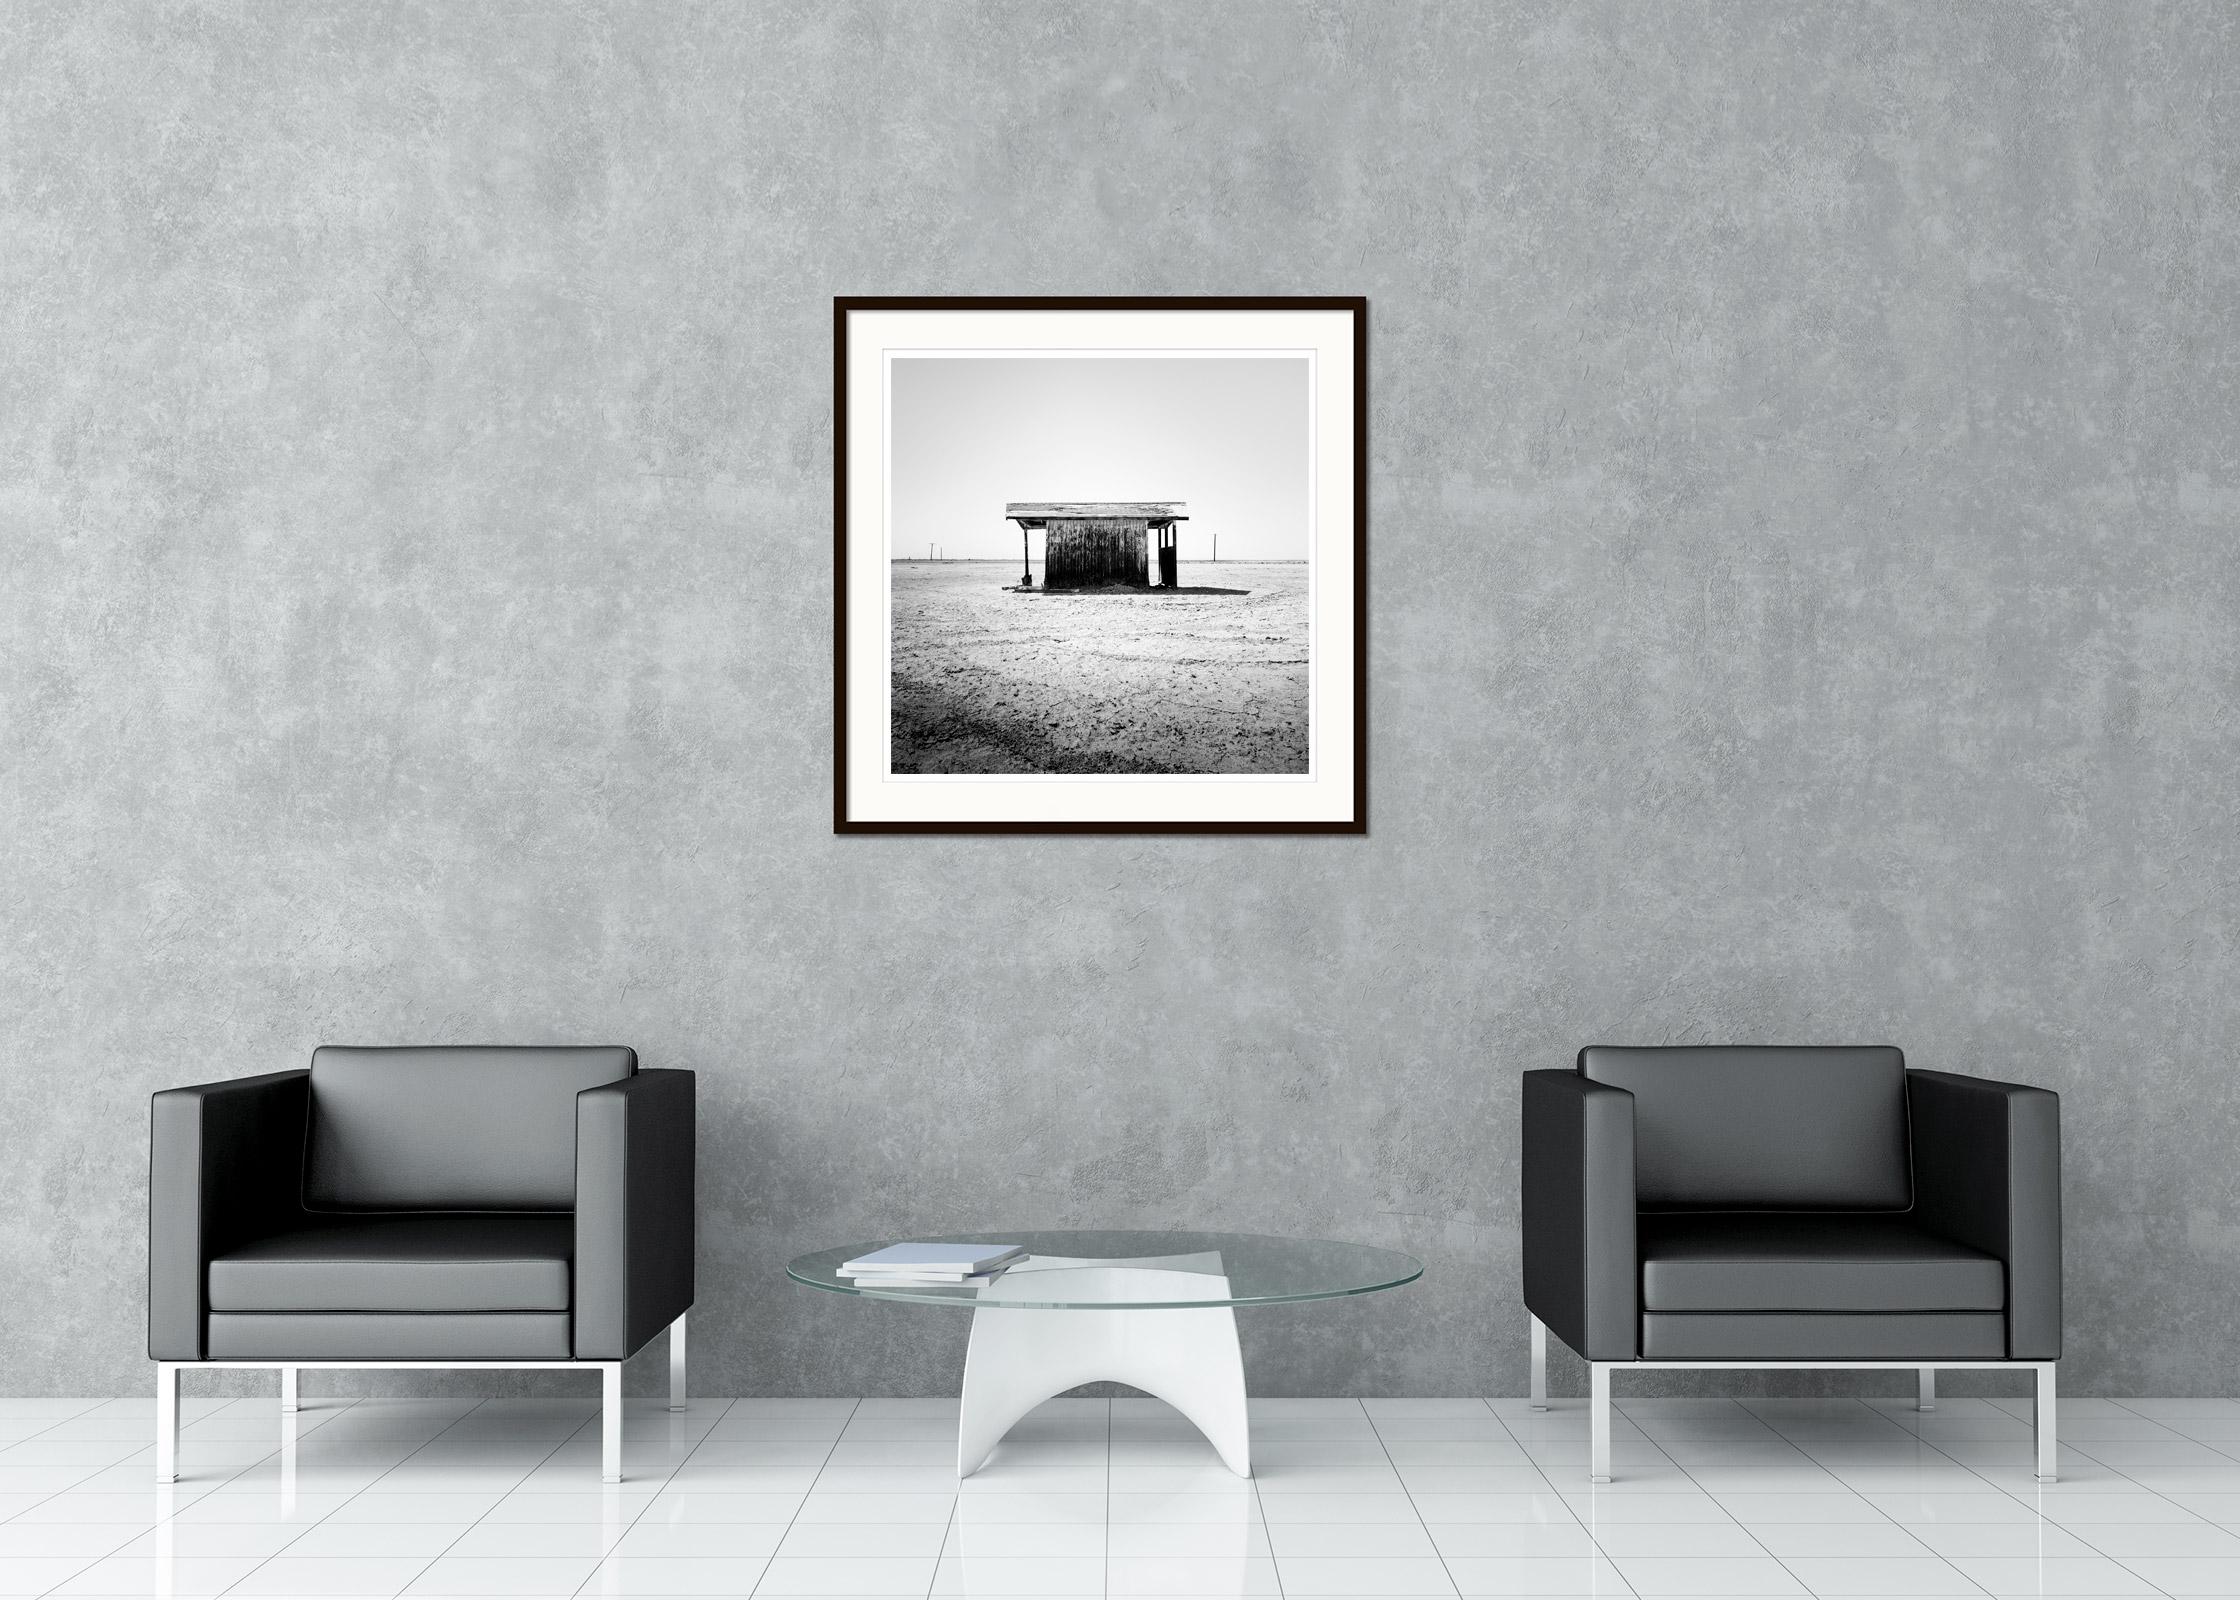 Minimalistische Schwarz-Weiß-Fotografie - Verlassenes Badehaus am Salton Sea, Kalifornien, USA. Pigmenttintendruck, Auflage 9, signiert, betitelt, datiert und nummeriert vom Künstler. Mit Echtheitszertifikat. Bedruckt mit einem 4 cm breiten weißen